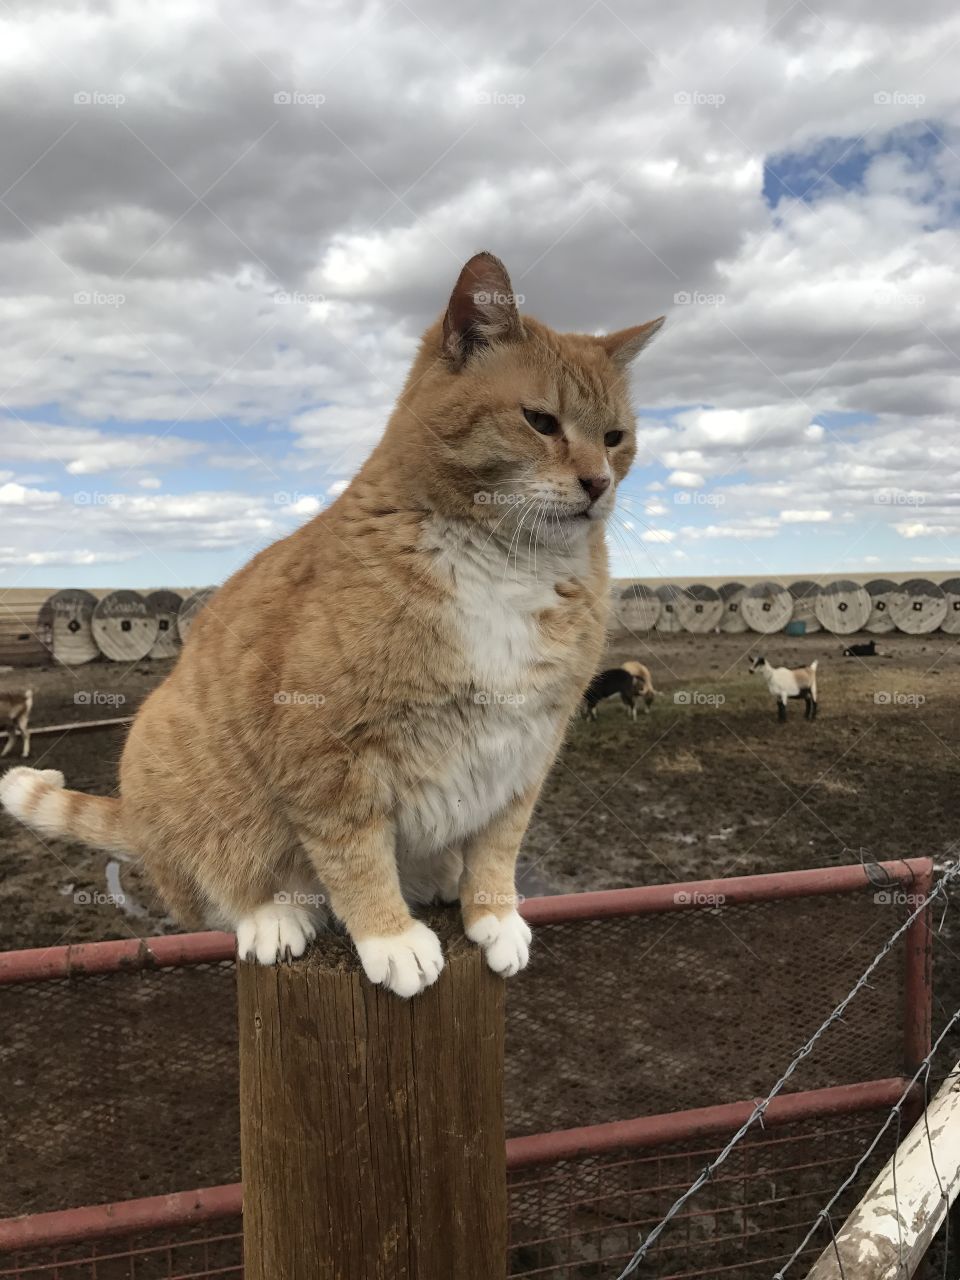 Farm cat sitting on a post